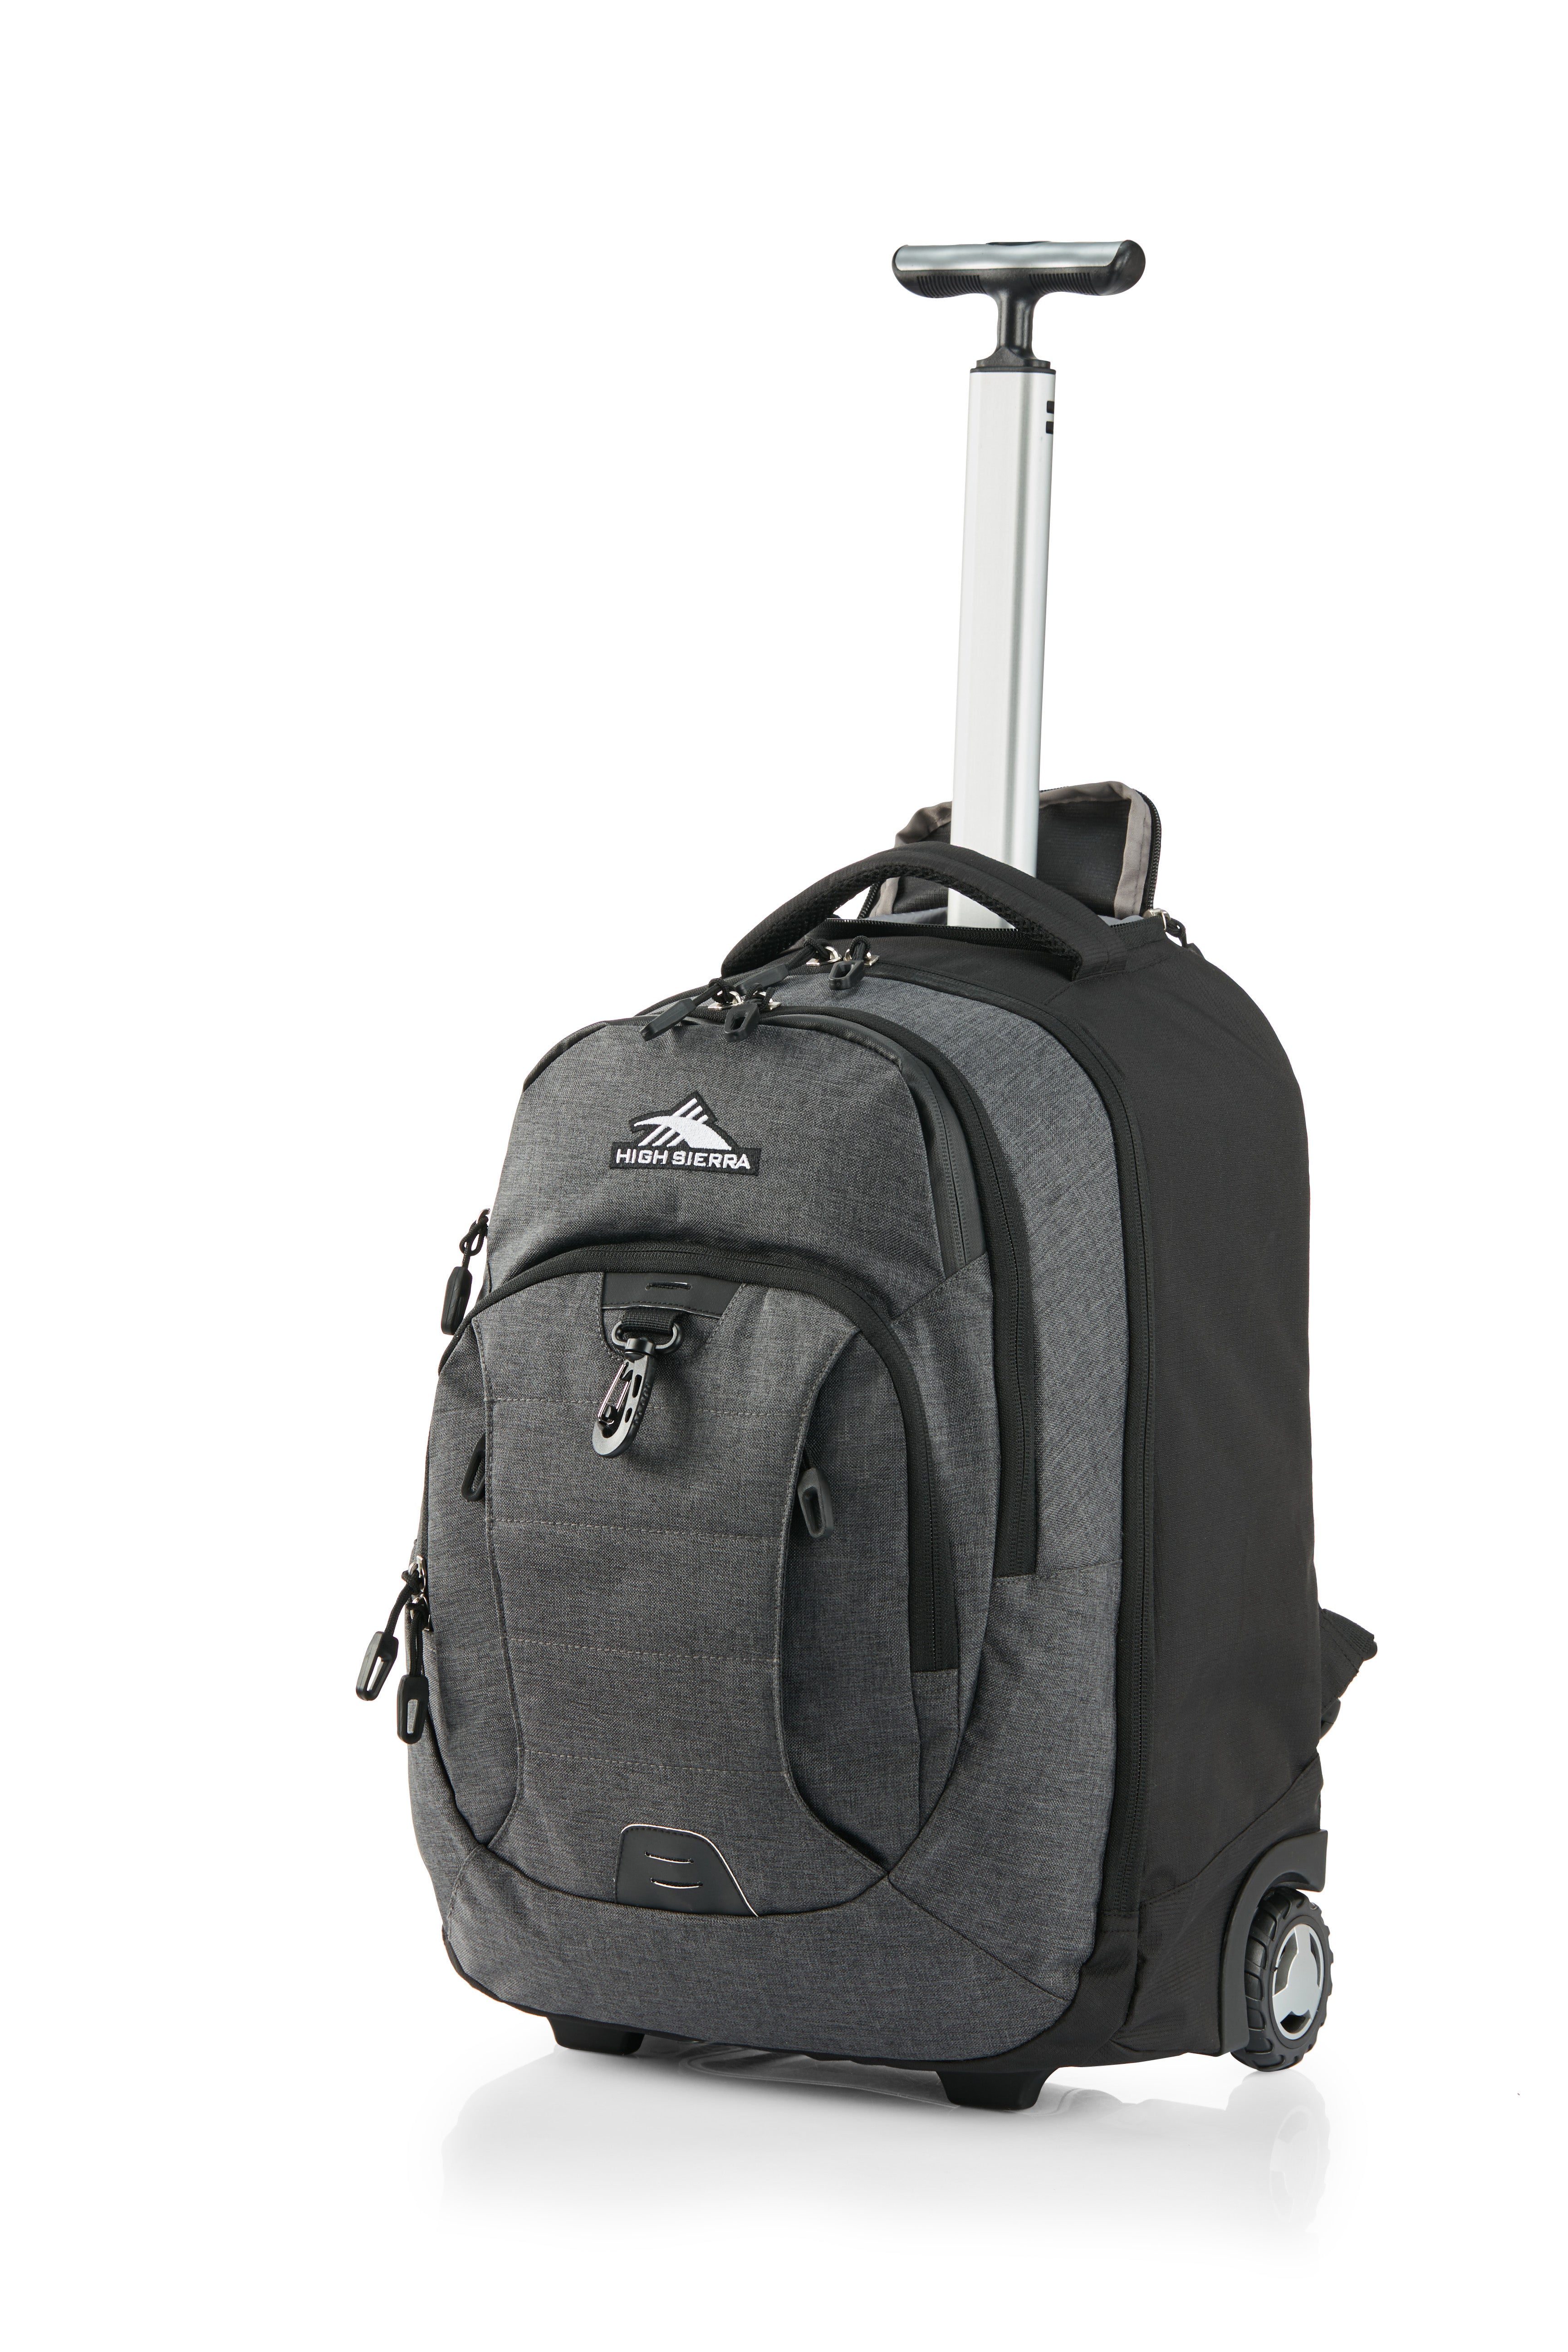 High Sierra - Jarvis Pro backpack on wheels - Black-2